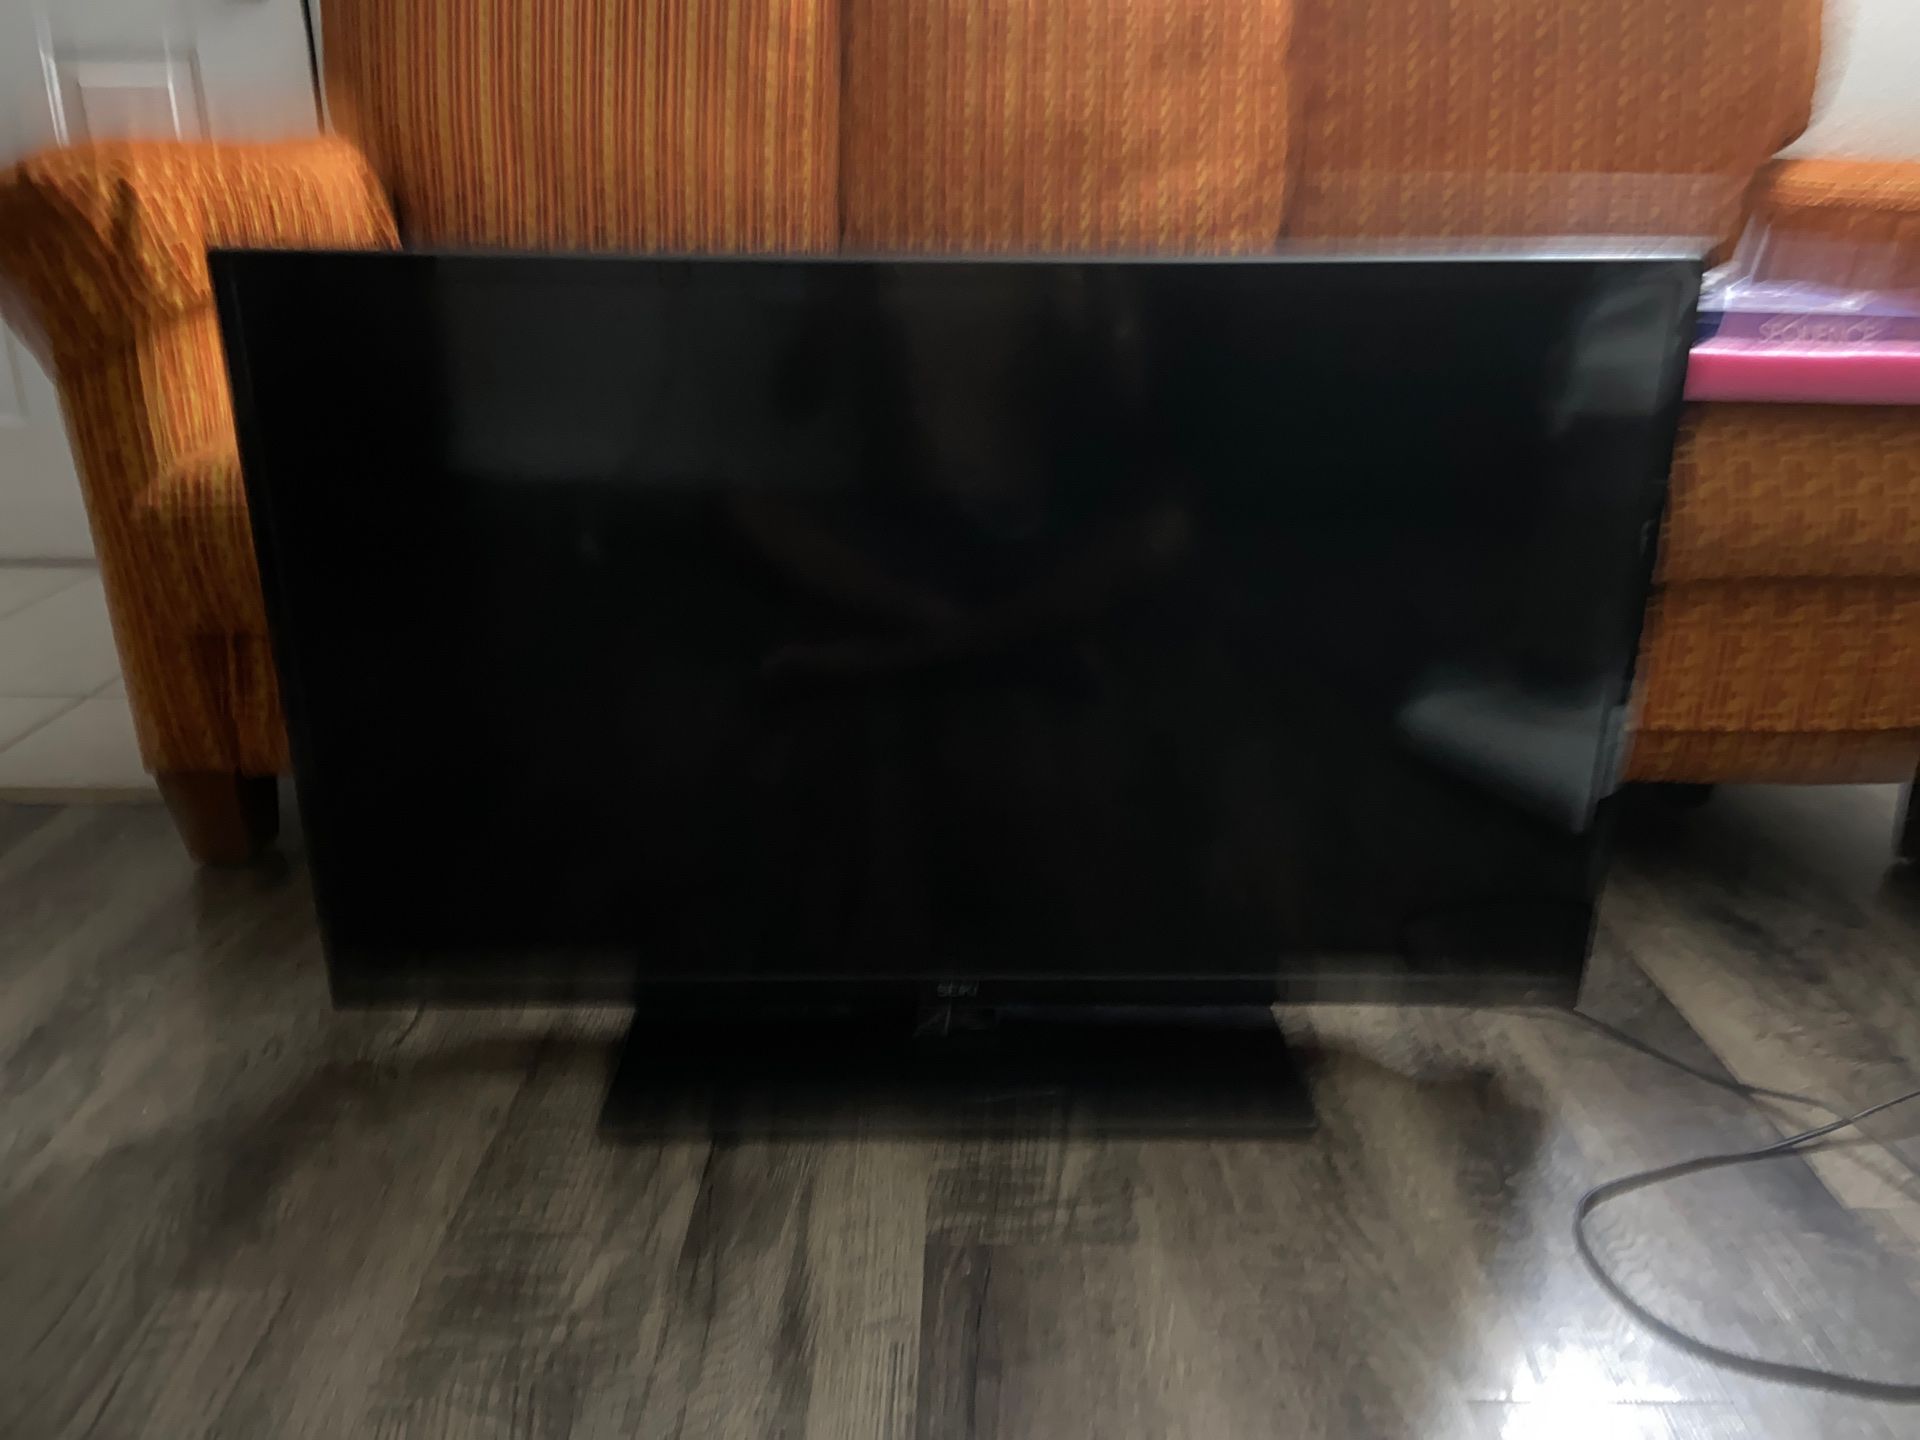 Seiki 40 inch tv